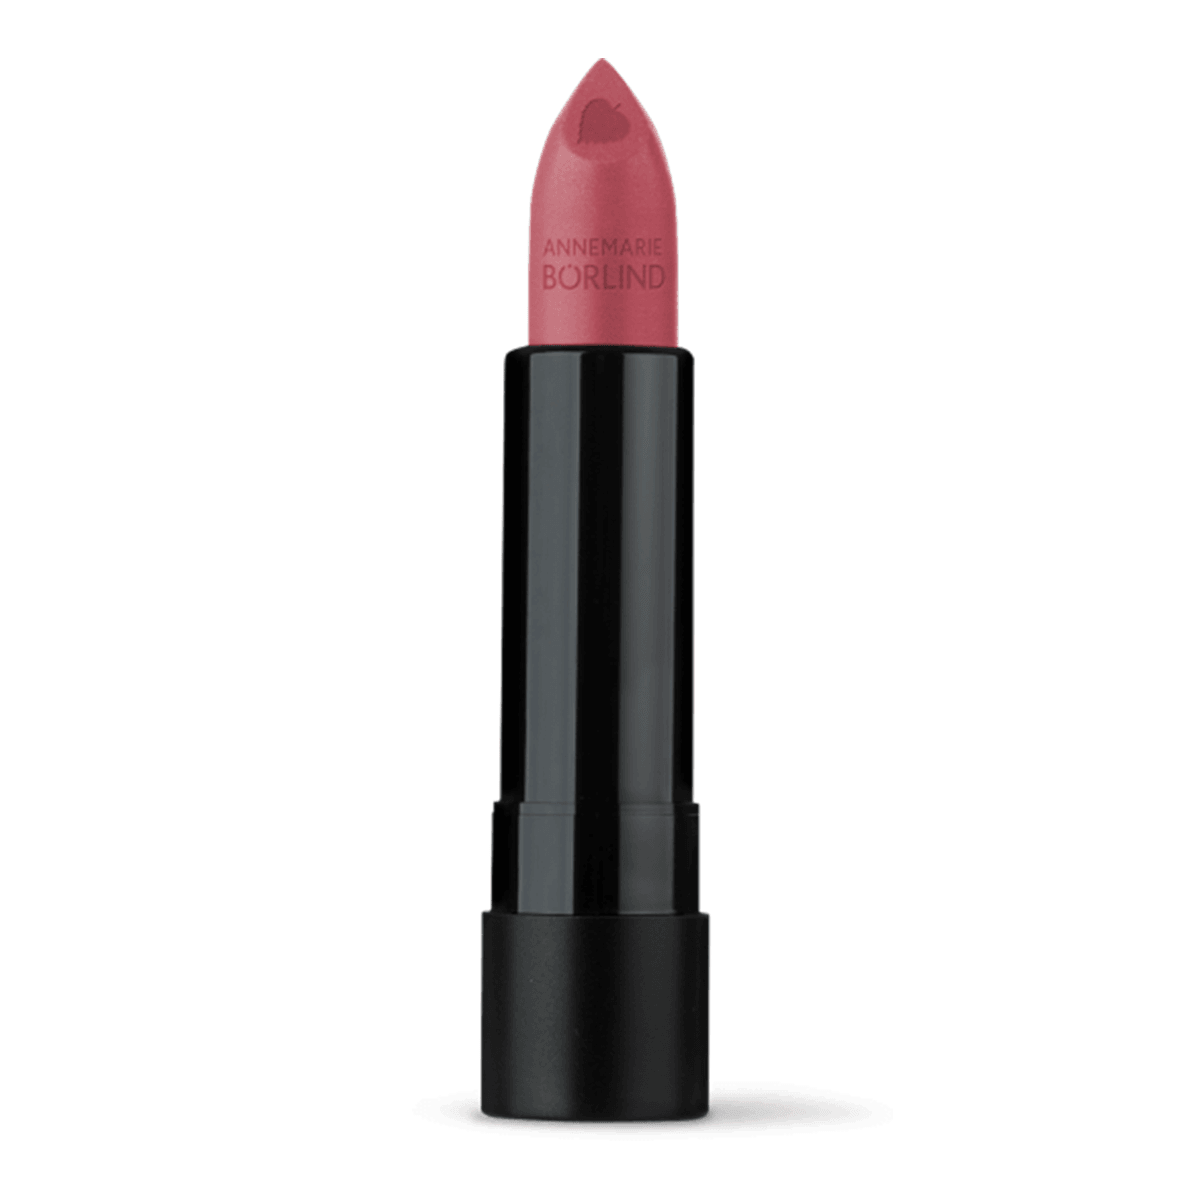 Annemarie Borlind Lipstick Sienna 4.2g Cosmetics - Lip Makeup at Village Vitamin Store